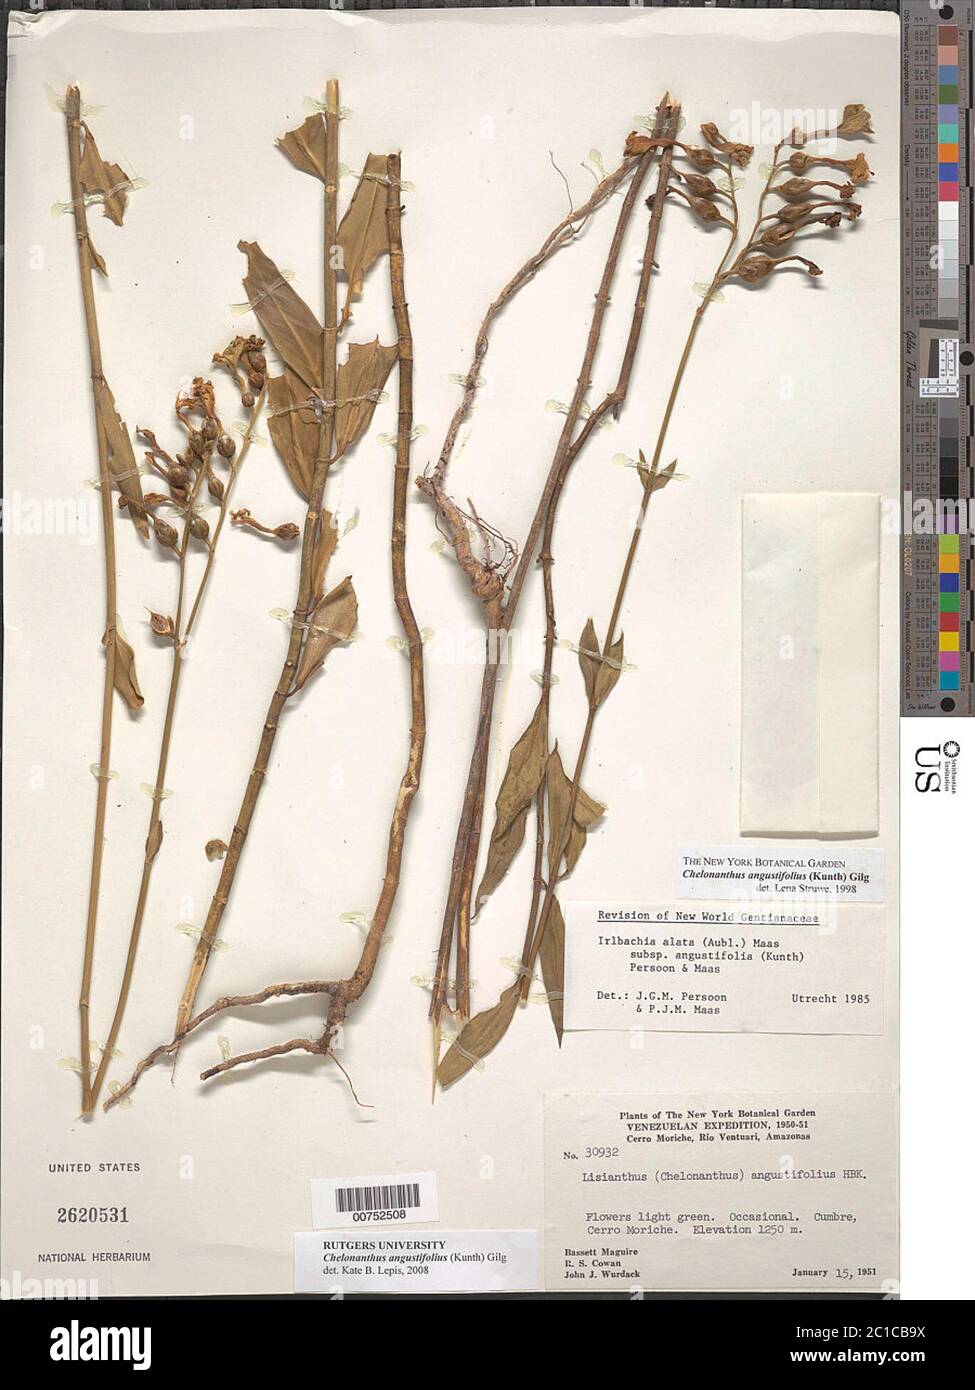 Chelonanthus angustifolius Kunth Gilg Chelonanthus angustifolius Kunth Gilg. Stock Photo